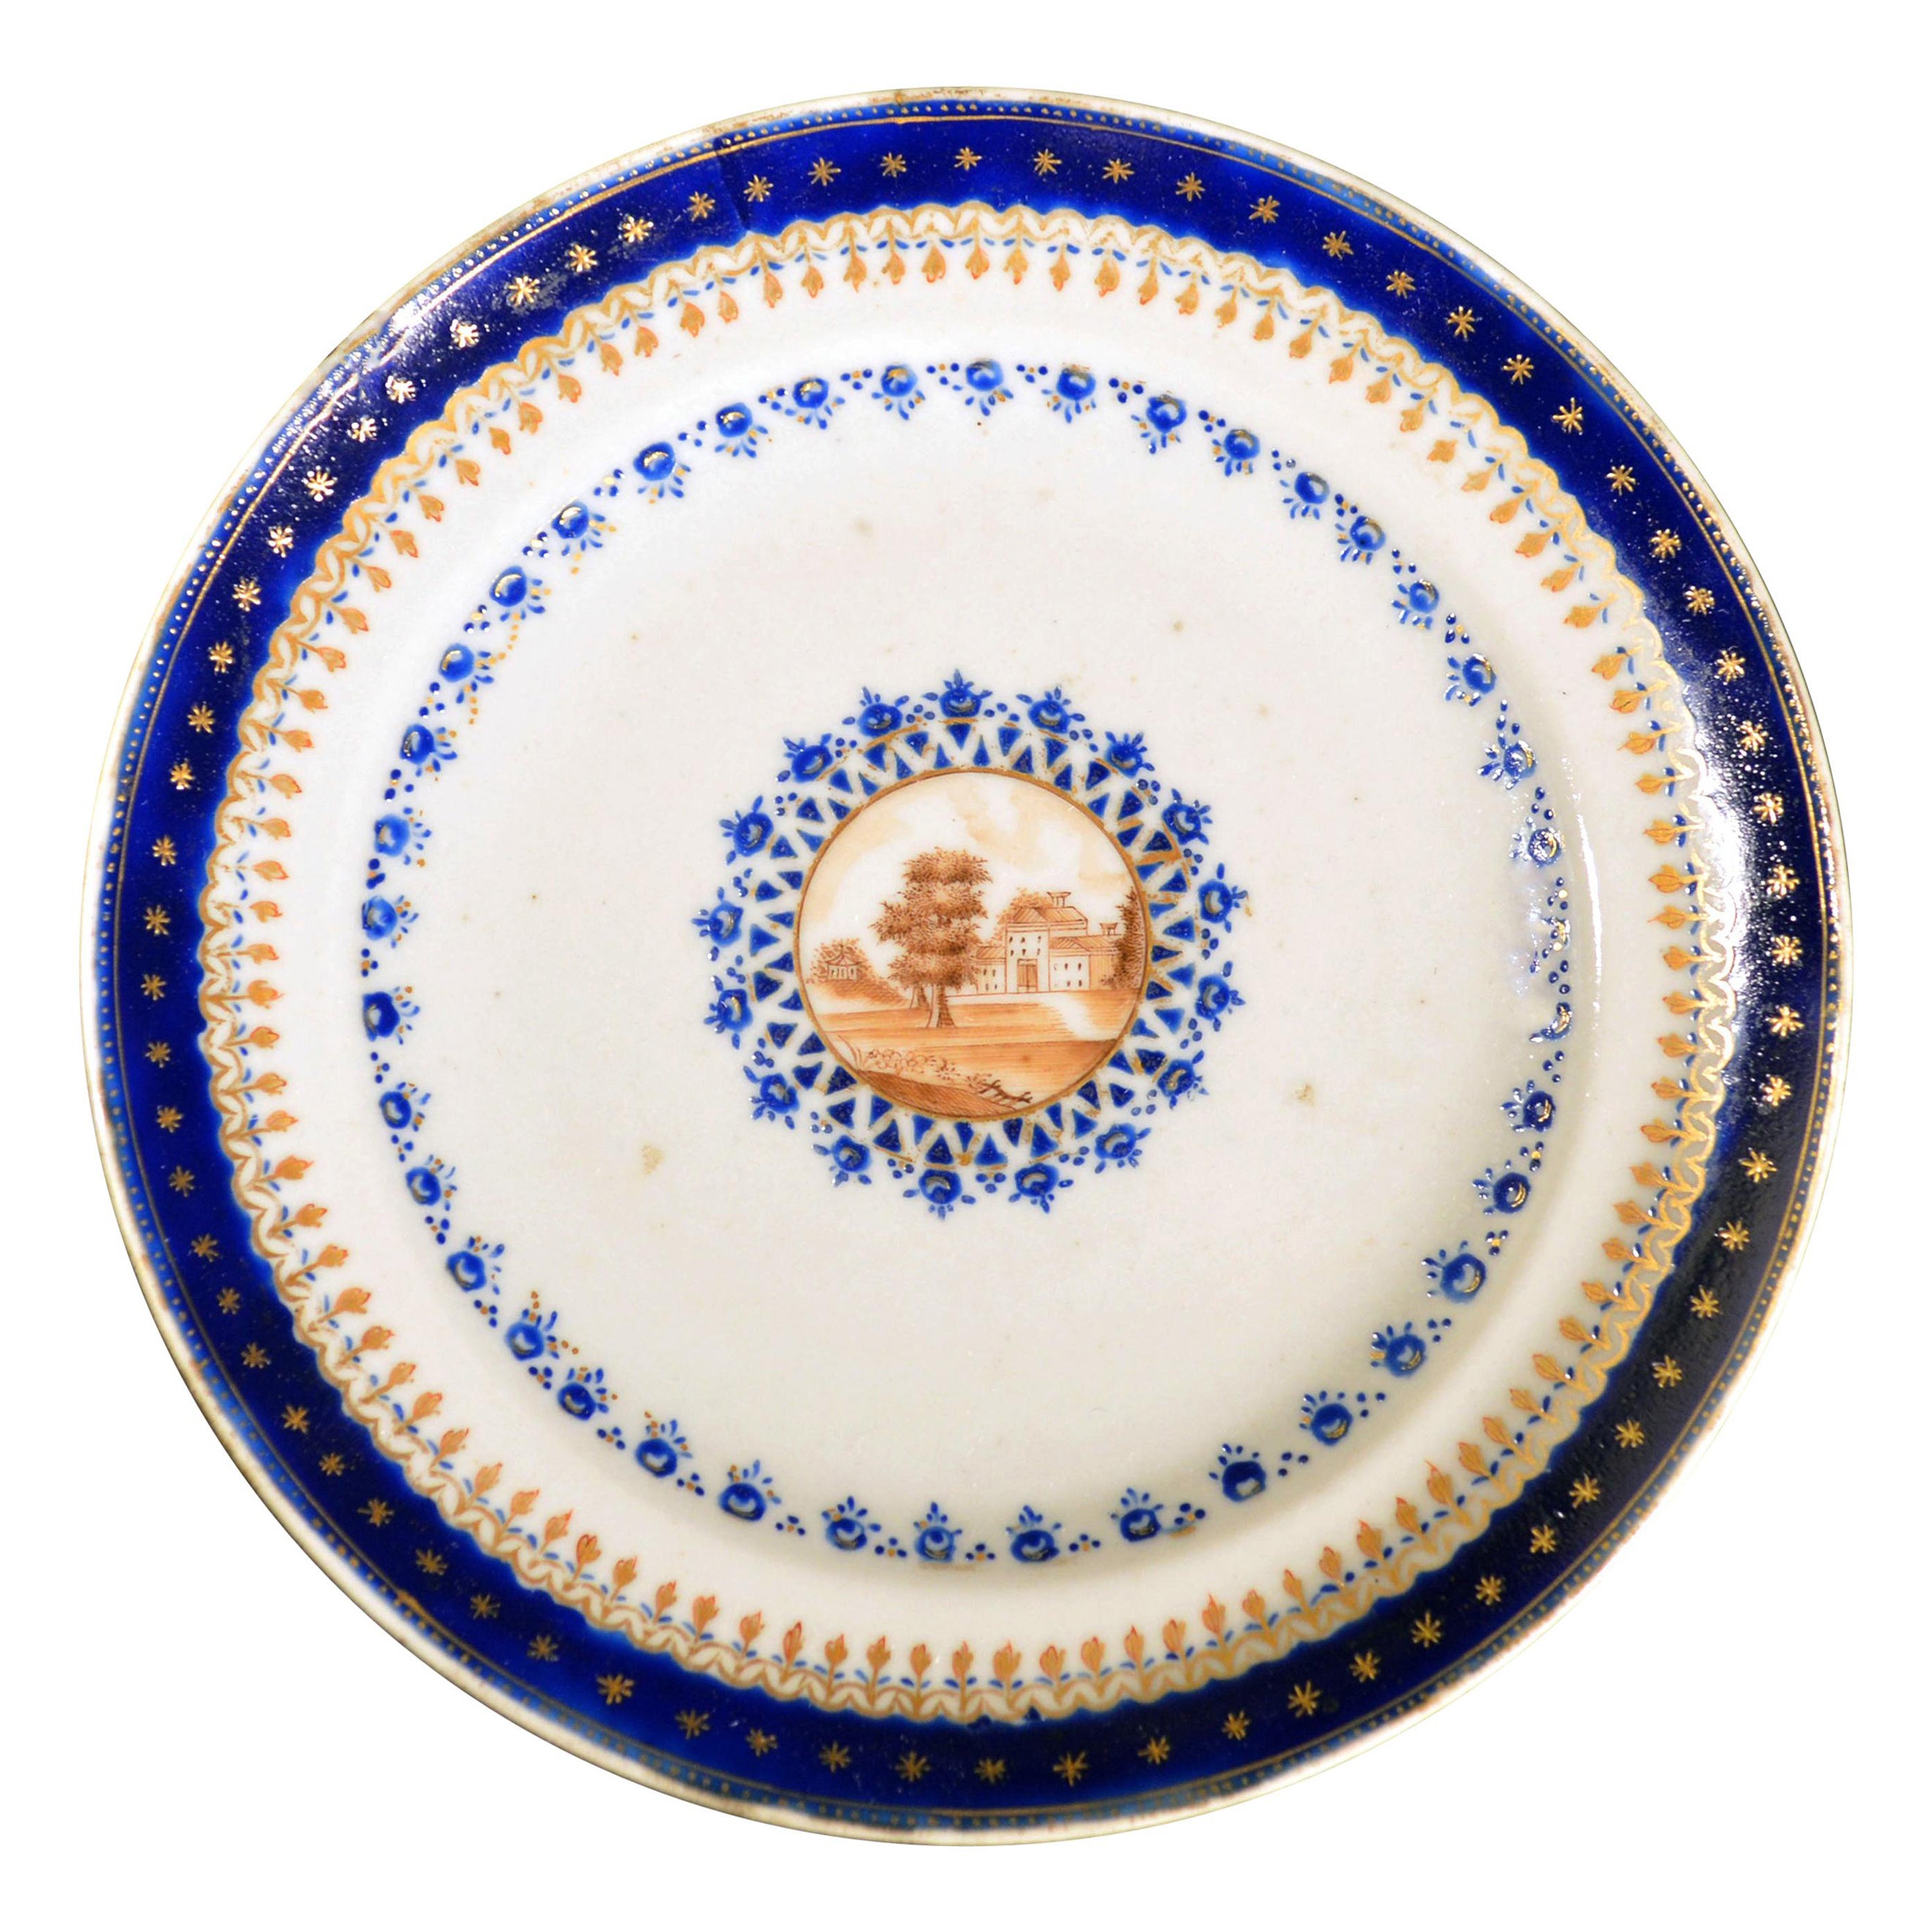 Assiette en porcelaine bleue émaillée d'exportation chinoise fabriquée pour le marché américain